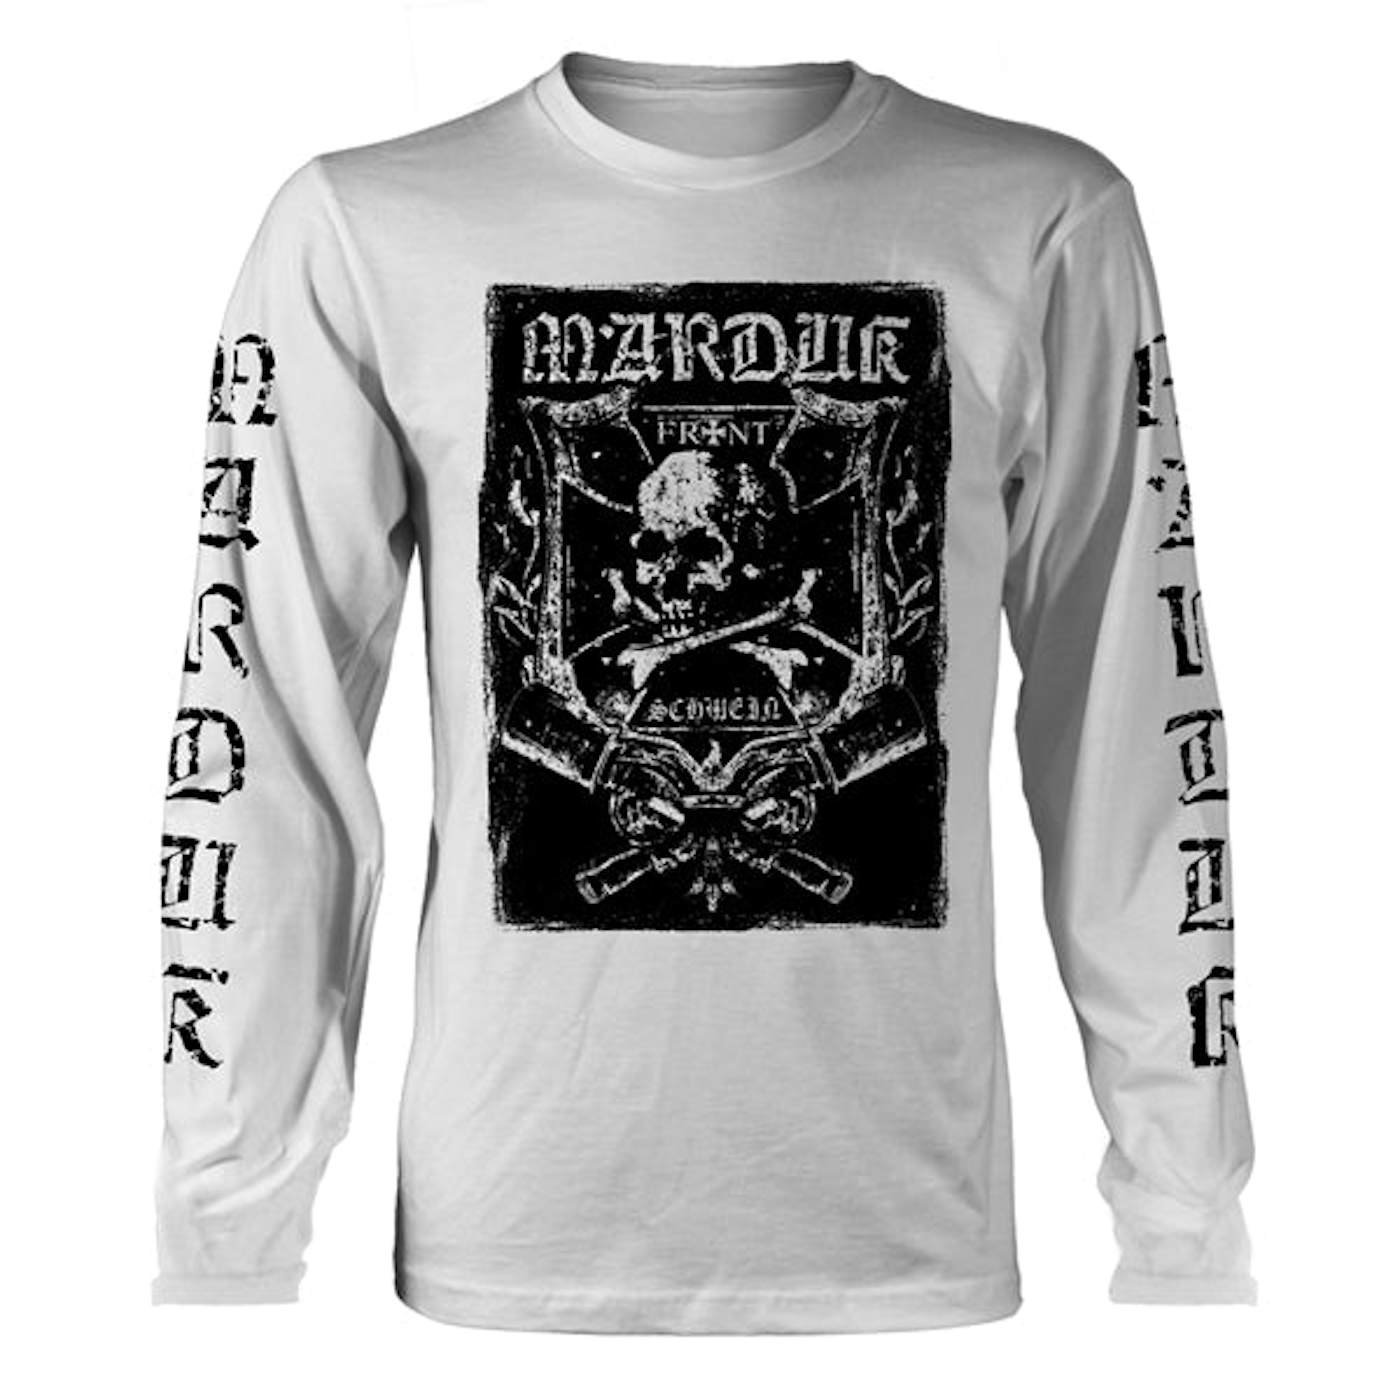 Marduk Long Sleeve T Shirt - Frontschwein